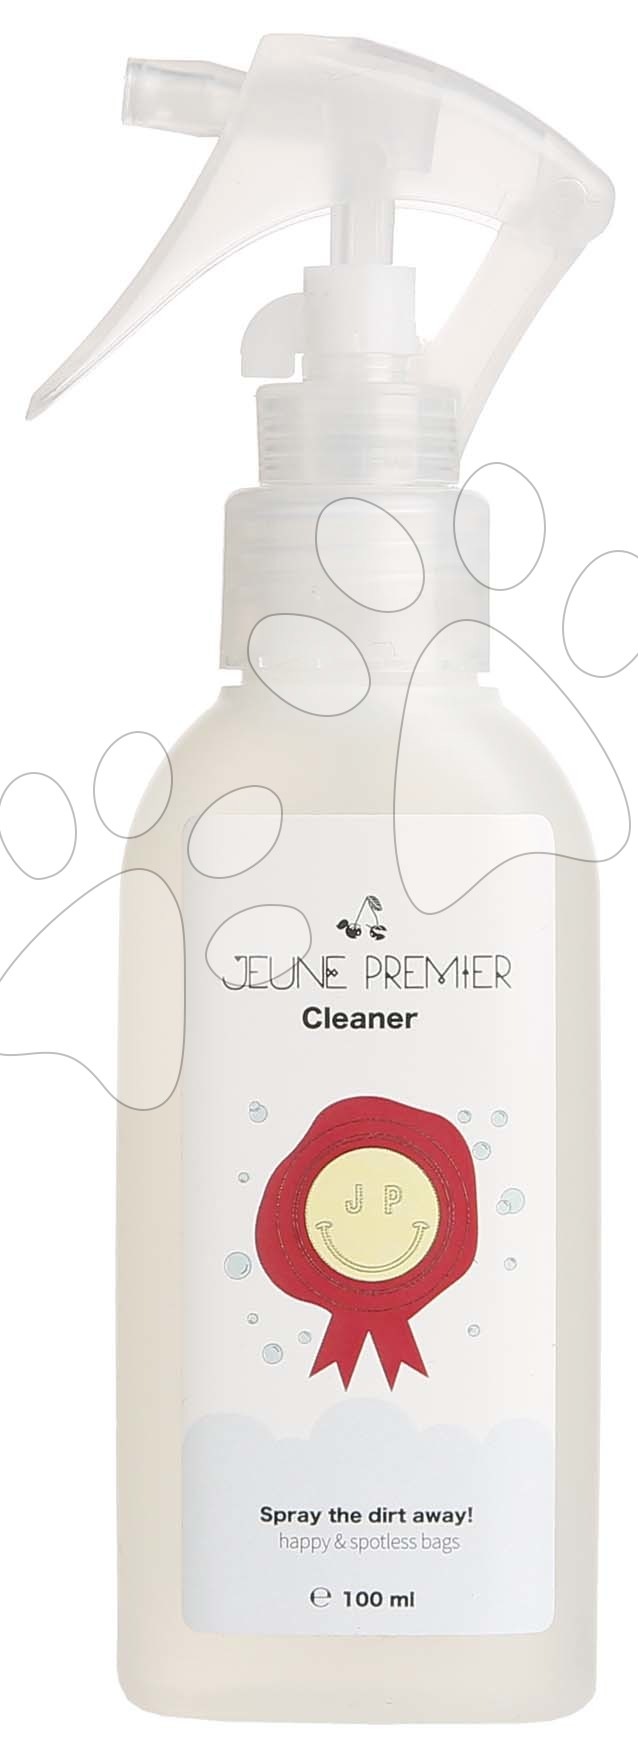 Čisticí sprej na tašky Cleaner Jeune Premier 100 ml